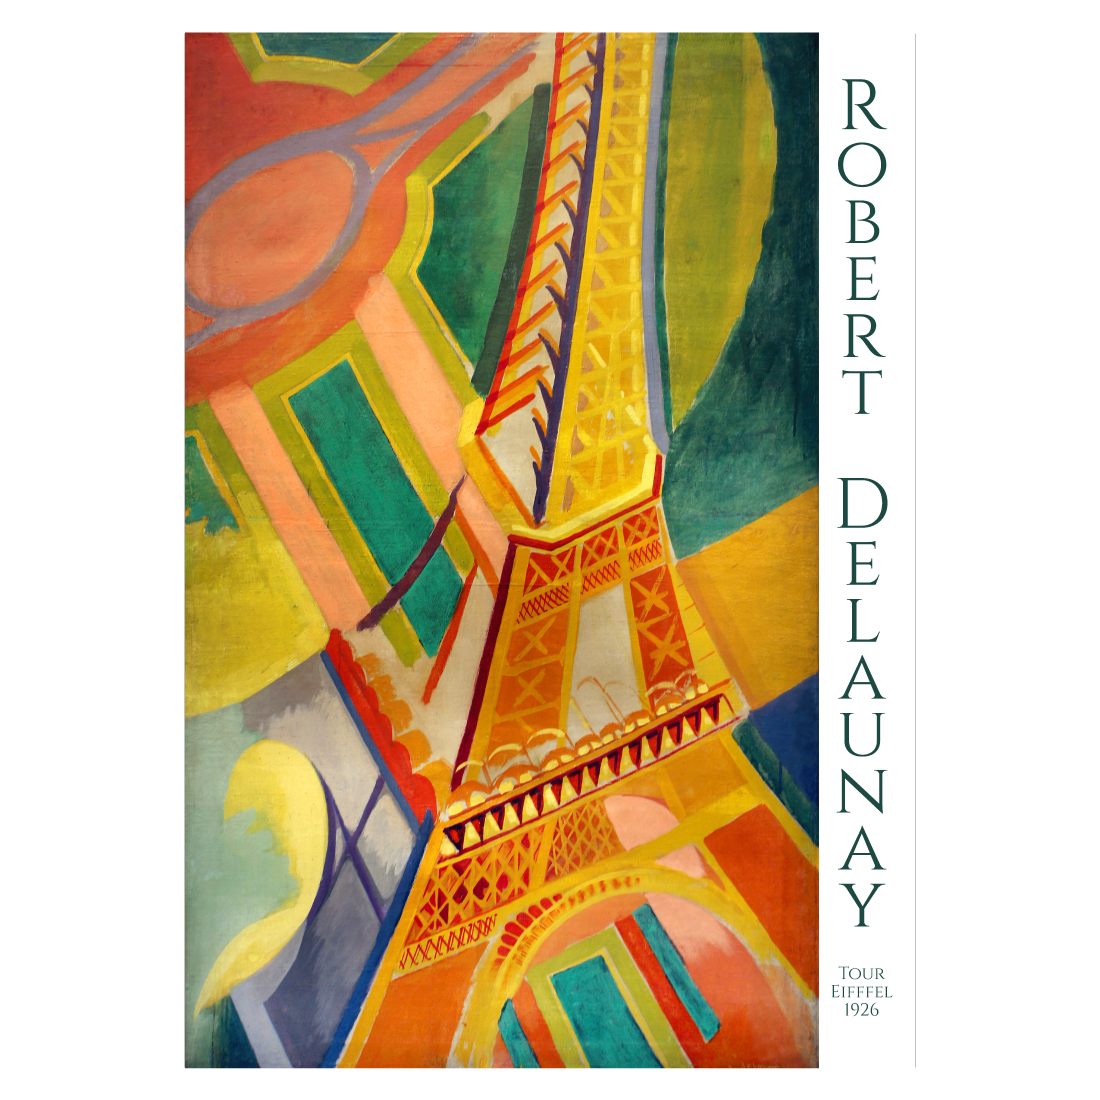 Kunstplakat med Robert Delaunay "Tour Eiffel" fra 1926